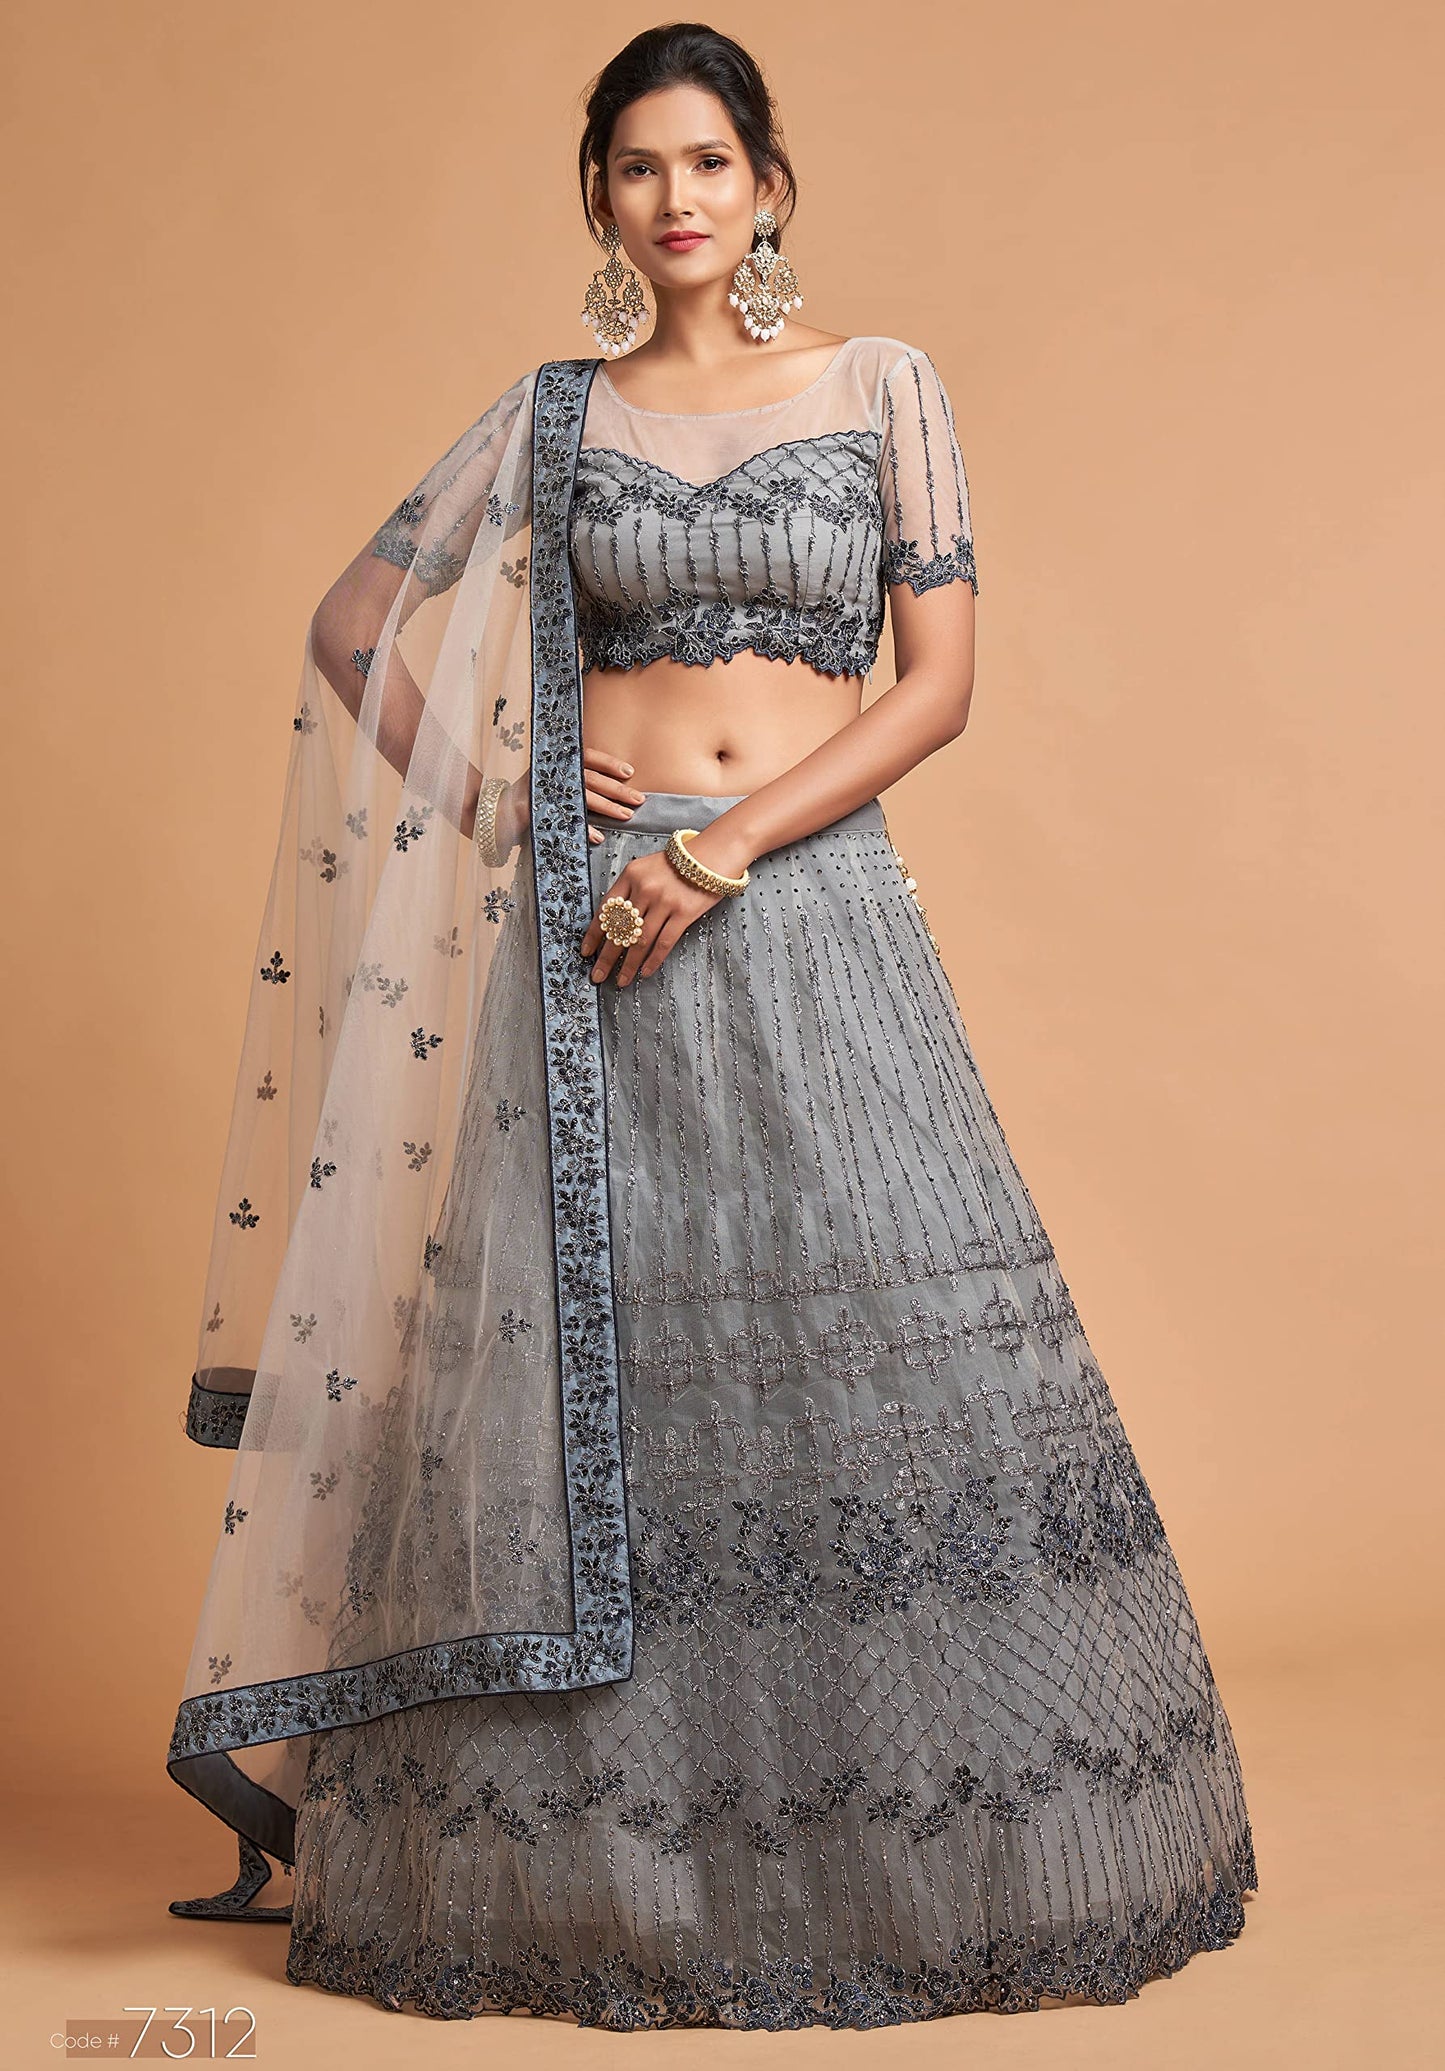 Zeel Clothing Women's Net Embroidered Semi-Stitched Bridal New Lehenga Choli with Dupatta (7312-Grey-Wedding-Girlish-Latest-Lehenga; Free Size)